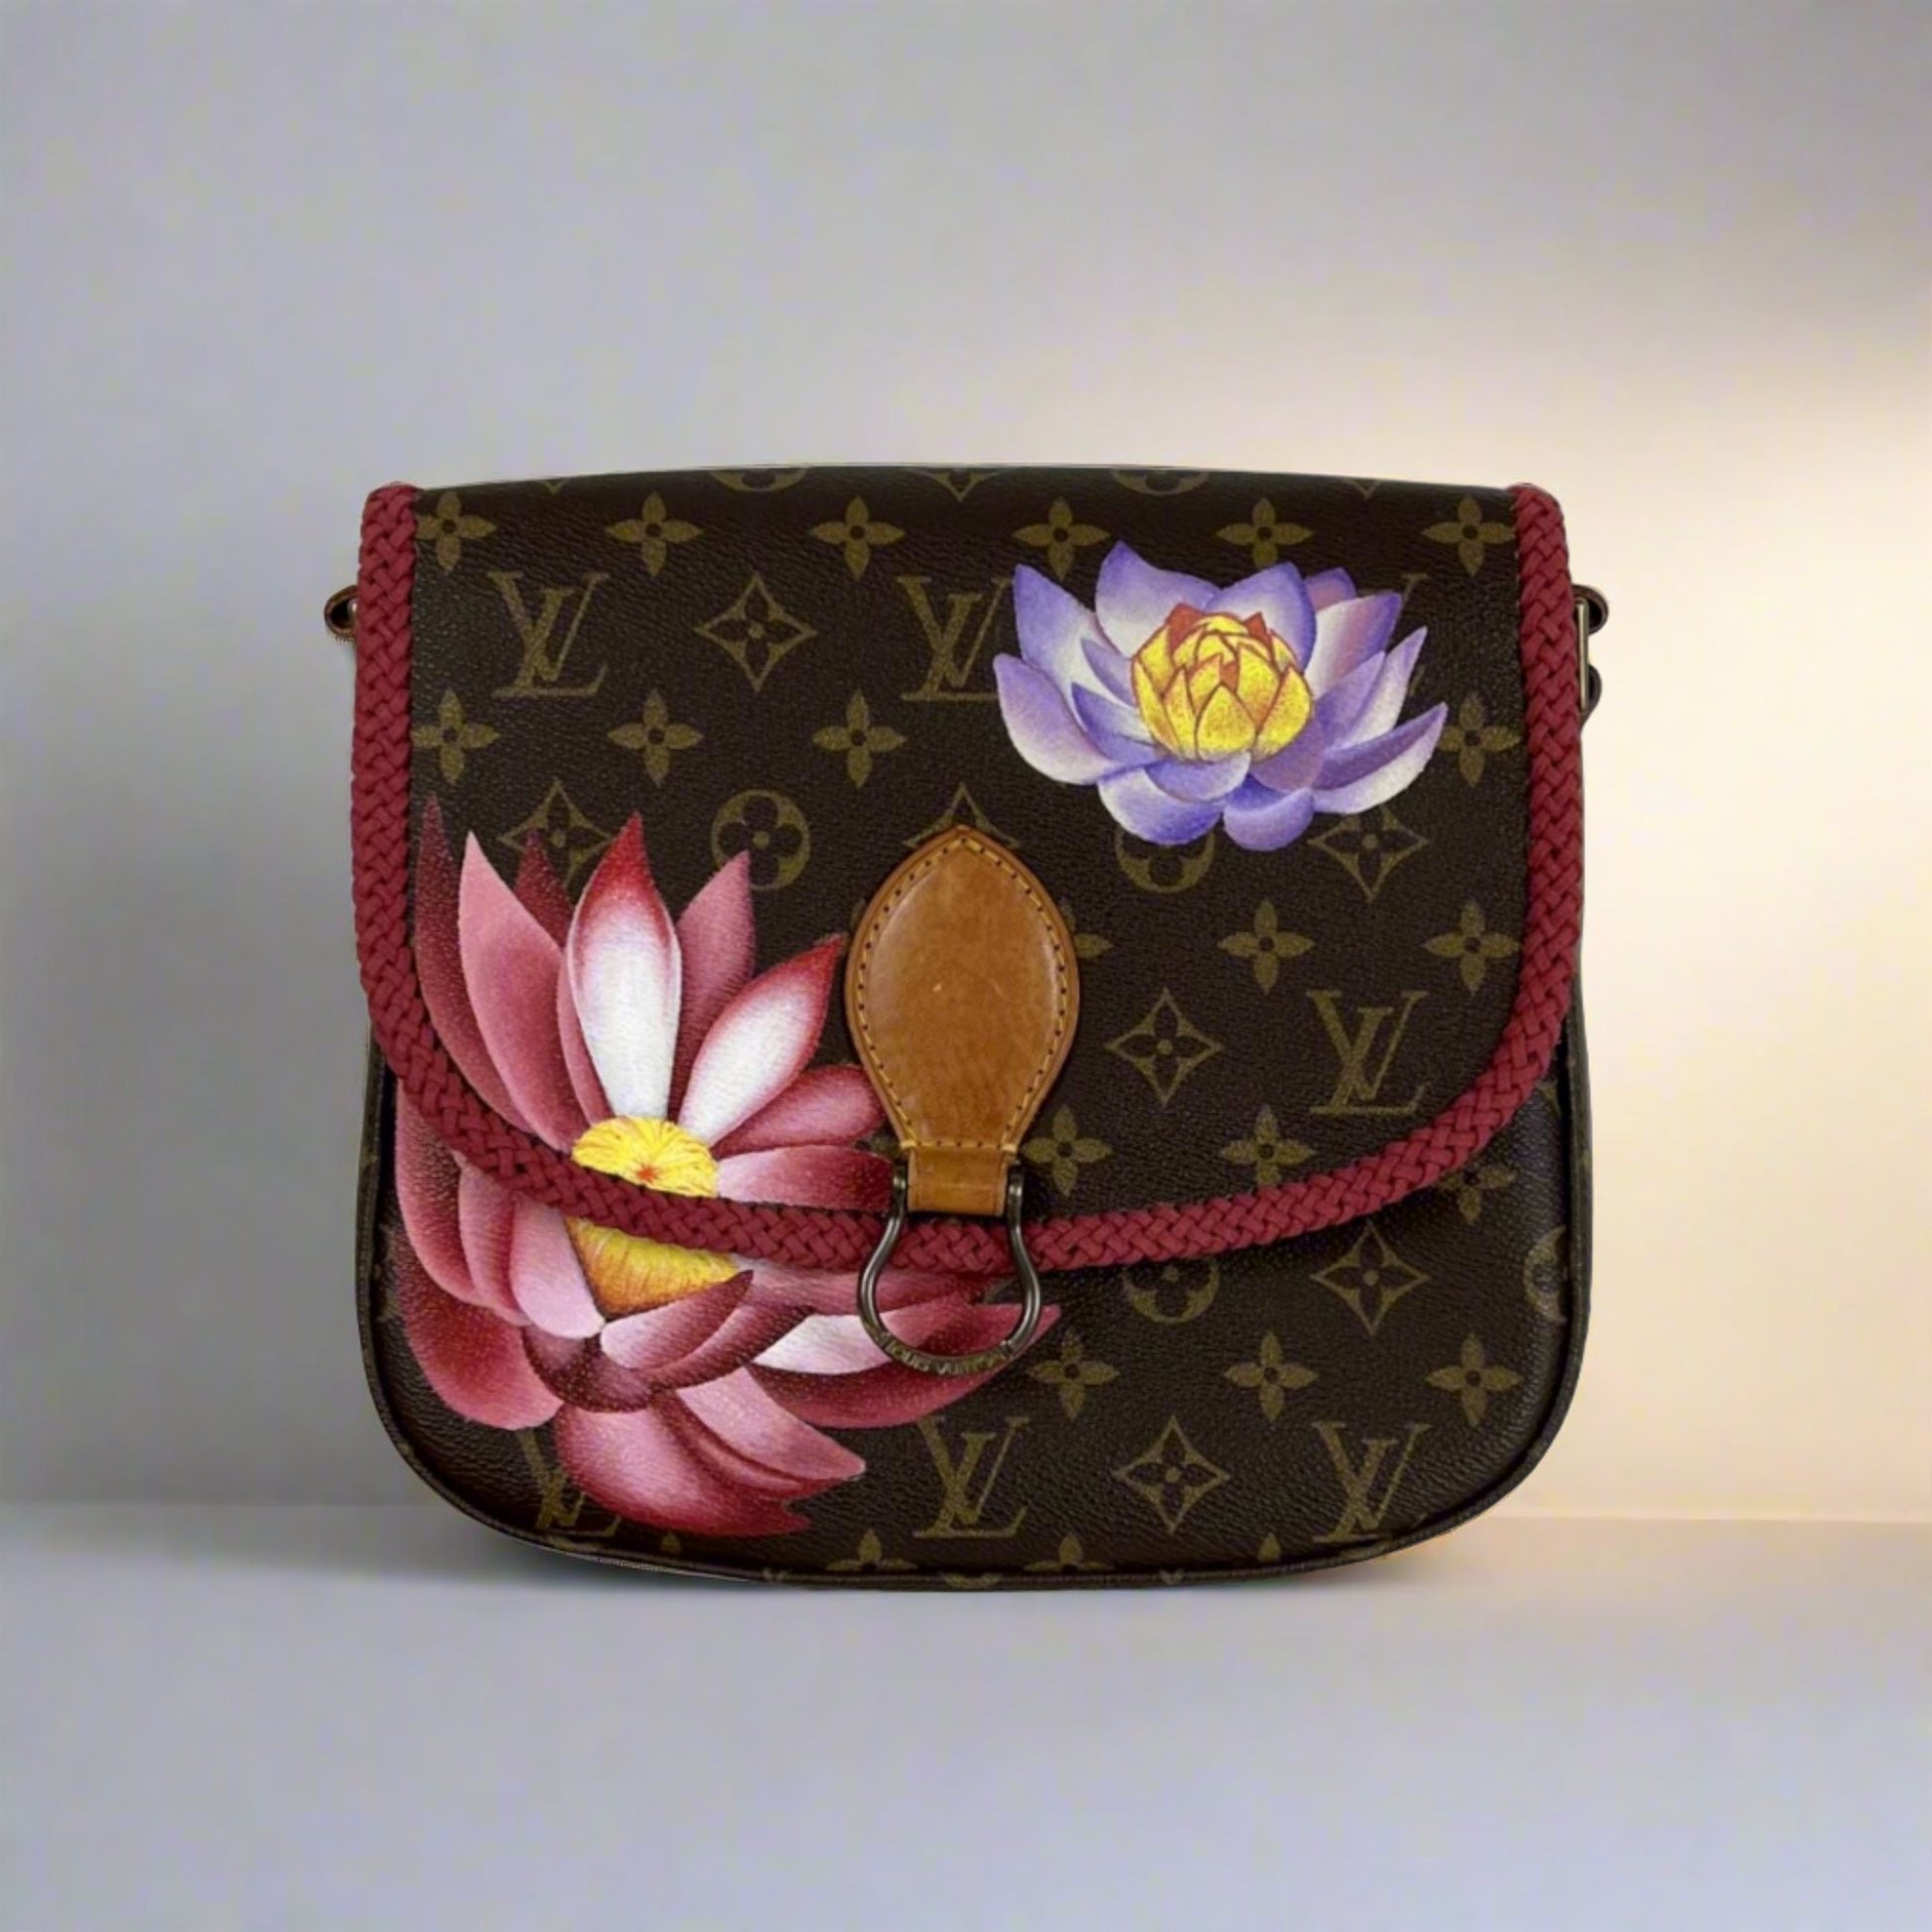 Louis Vuitton - Authenticated Saint Cloud Handbag - Cloth Brown for Women, Good Condition